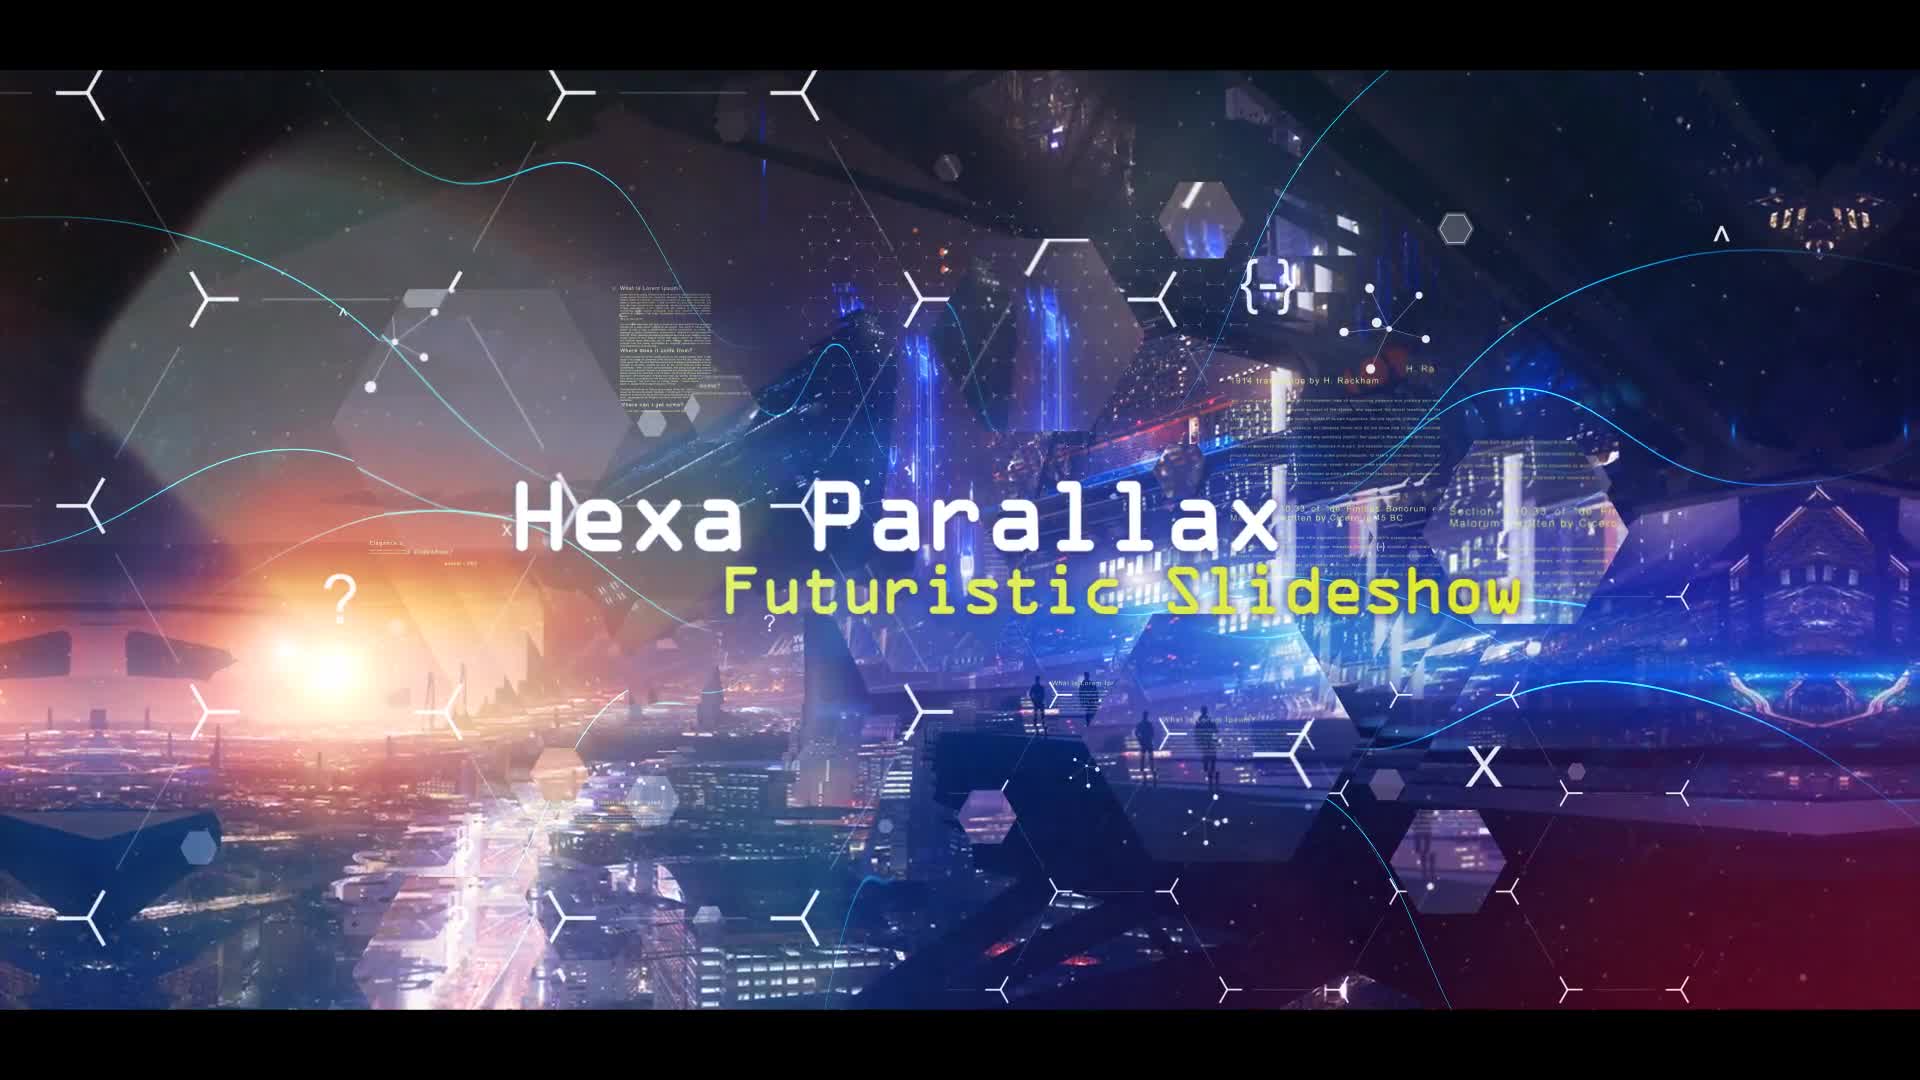 Hexa Parallax | Futuristic Slideshow Videohive 27178657 Premiere Pro Image 13